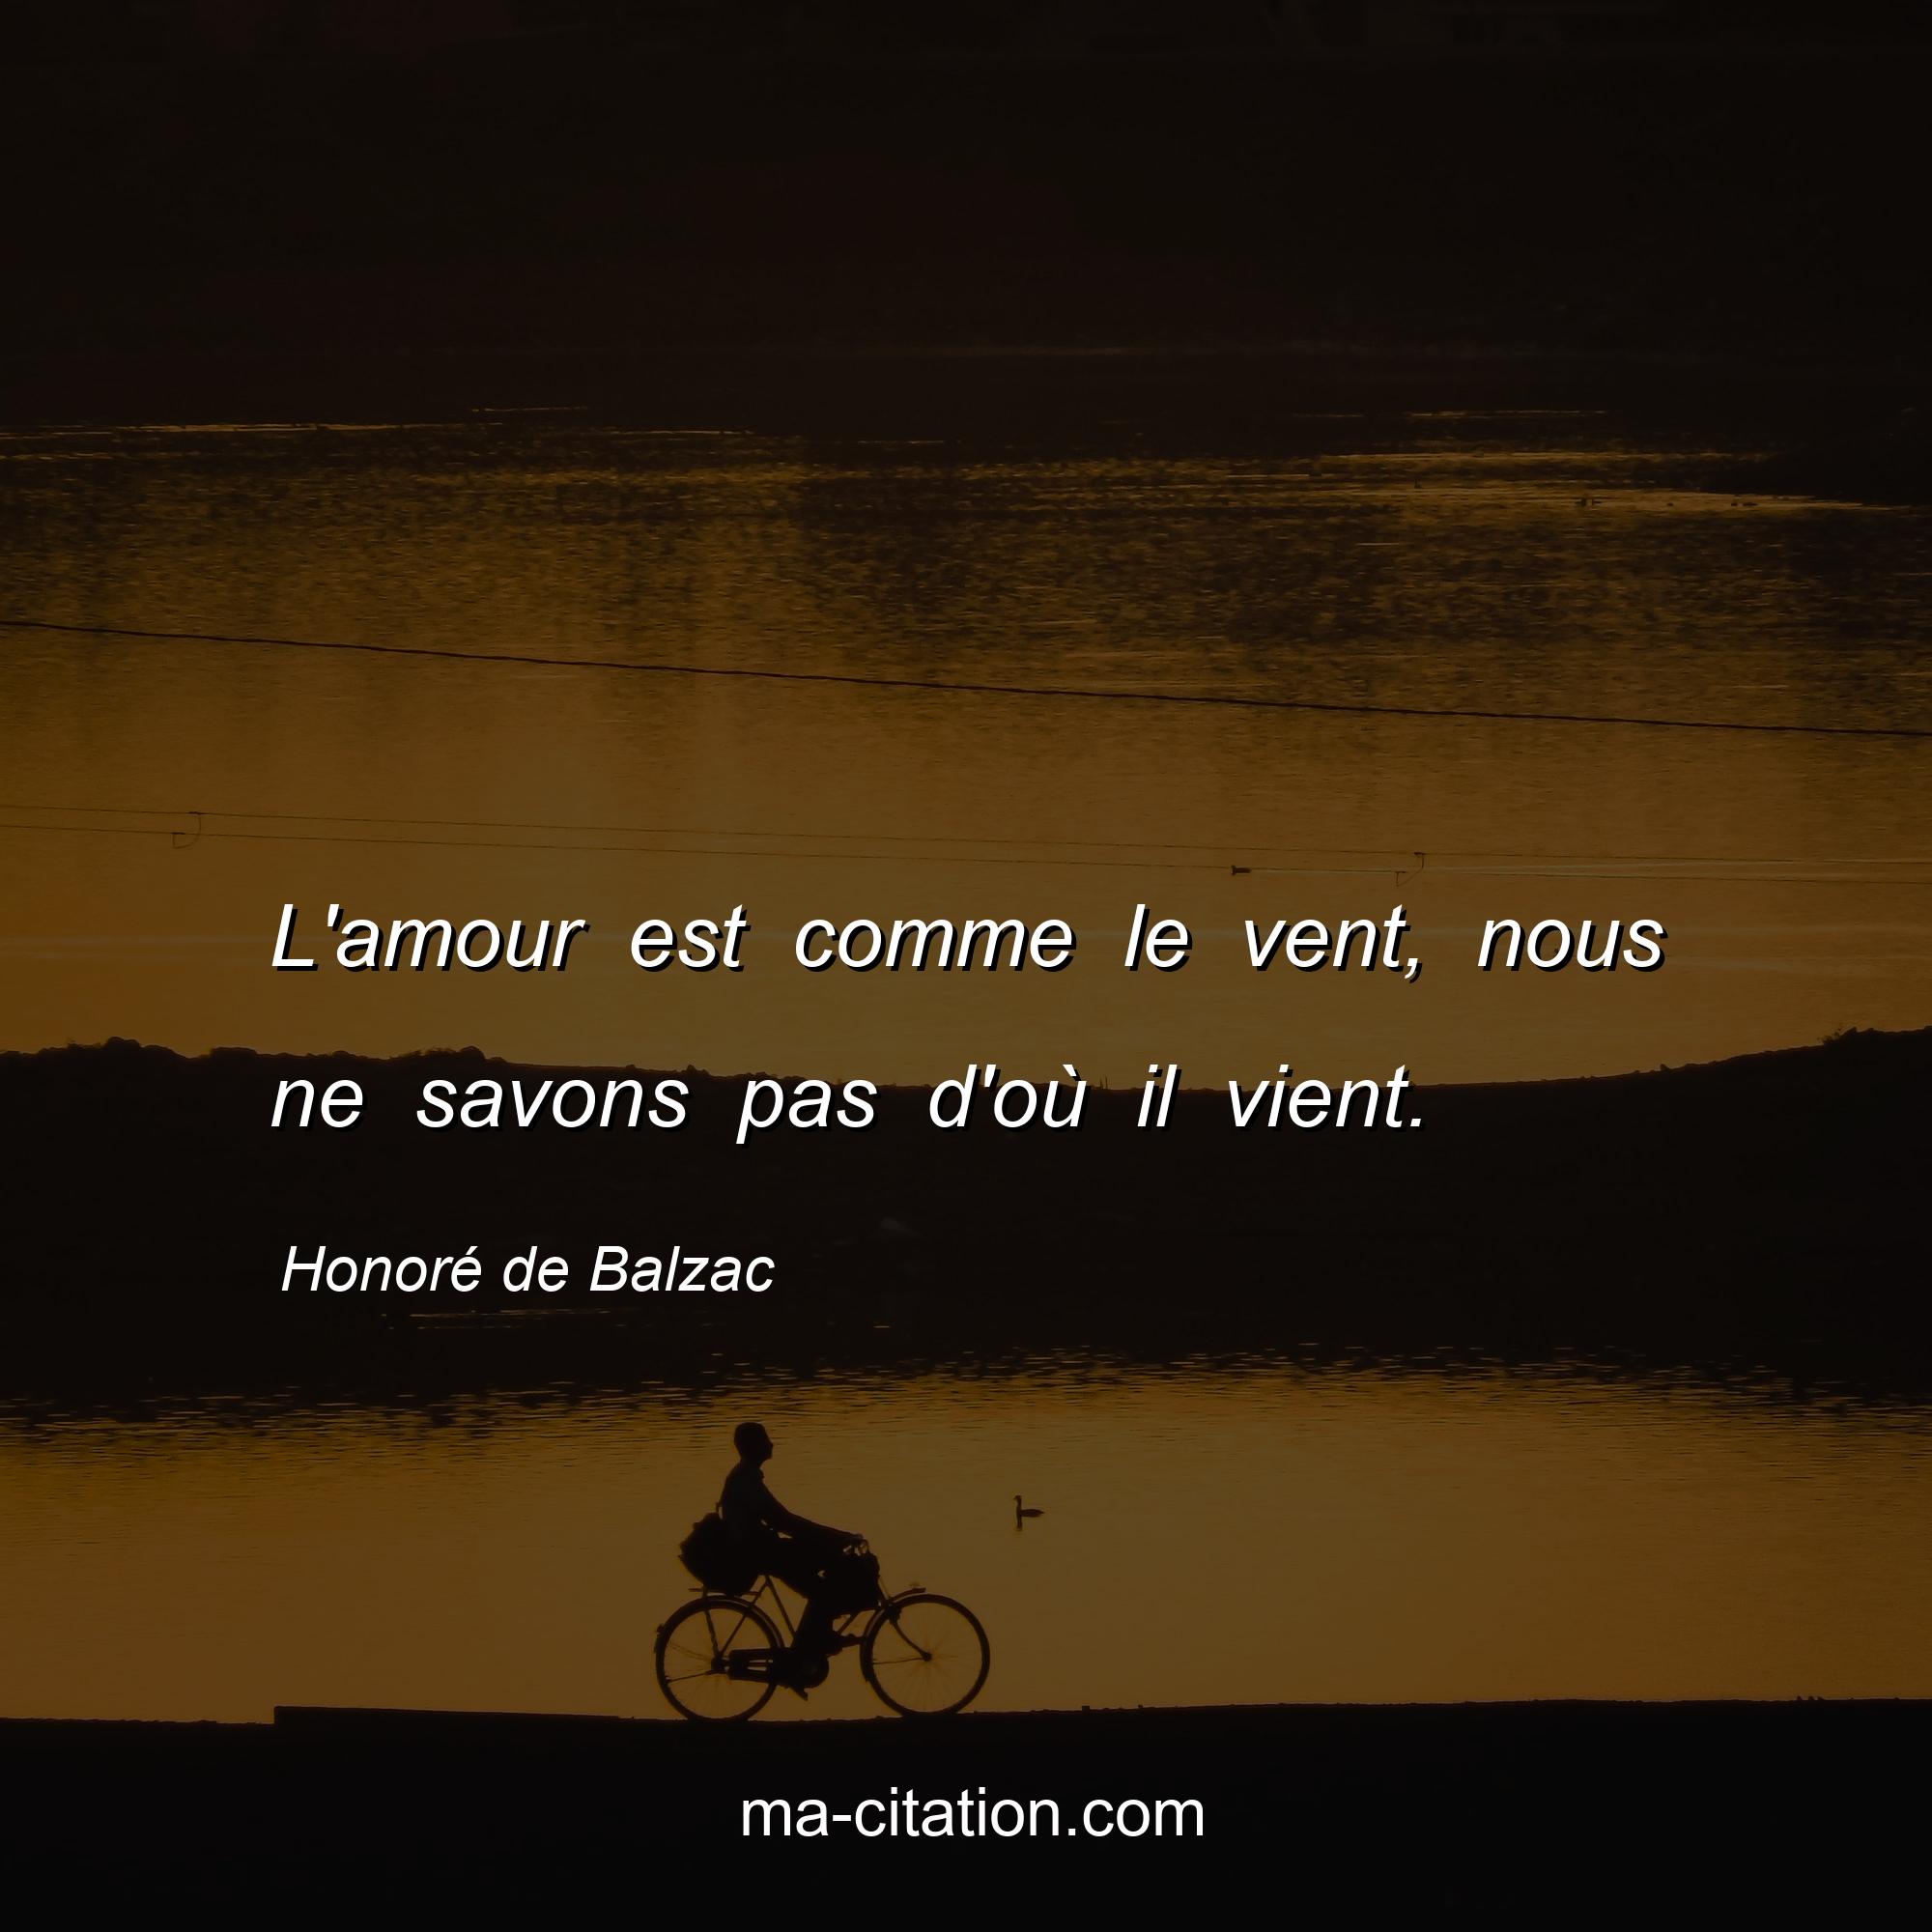 Honoré de Balzac : L'amour est comme le vent, nous ne savons pas d'où il vient.